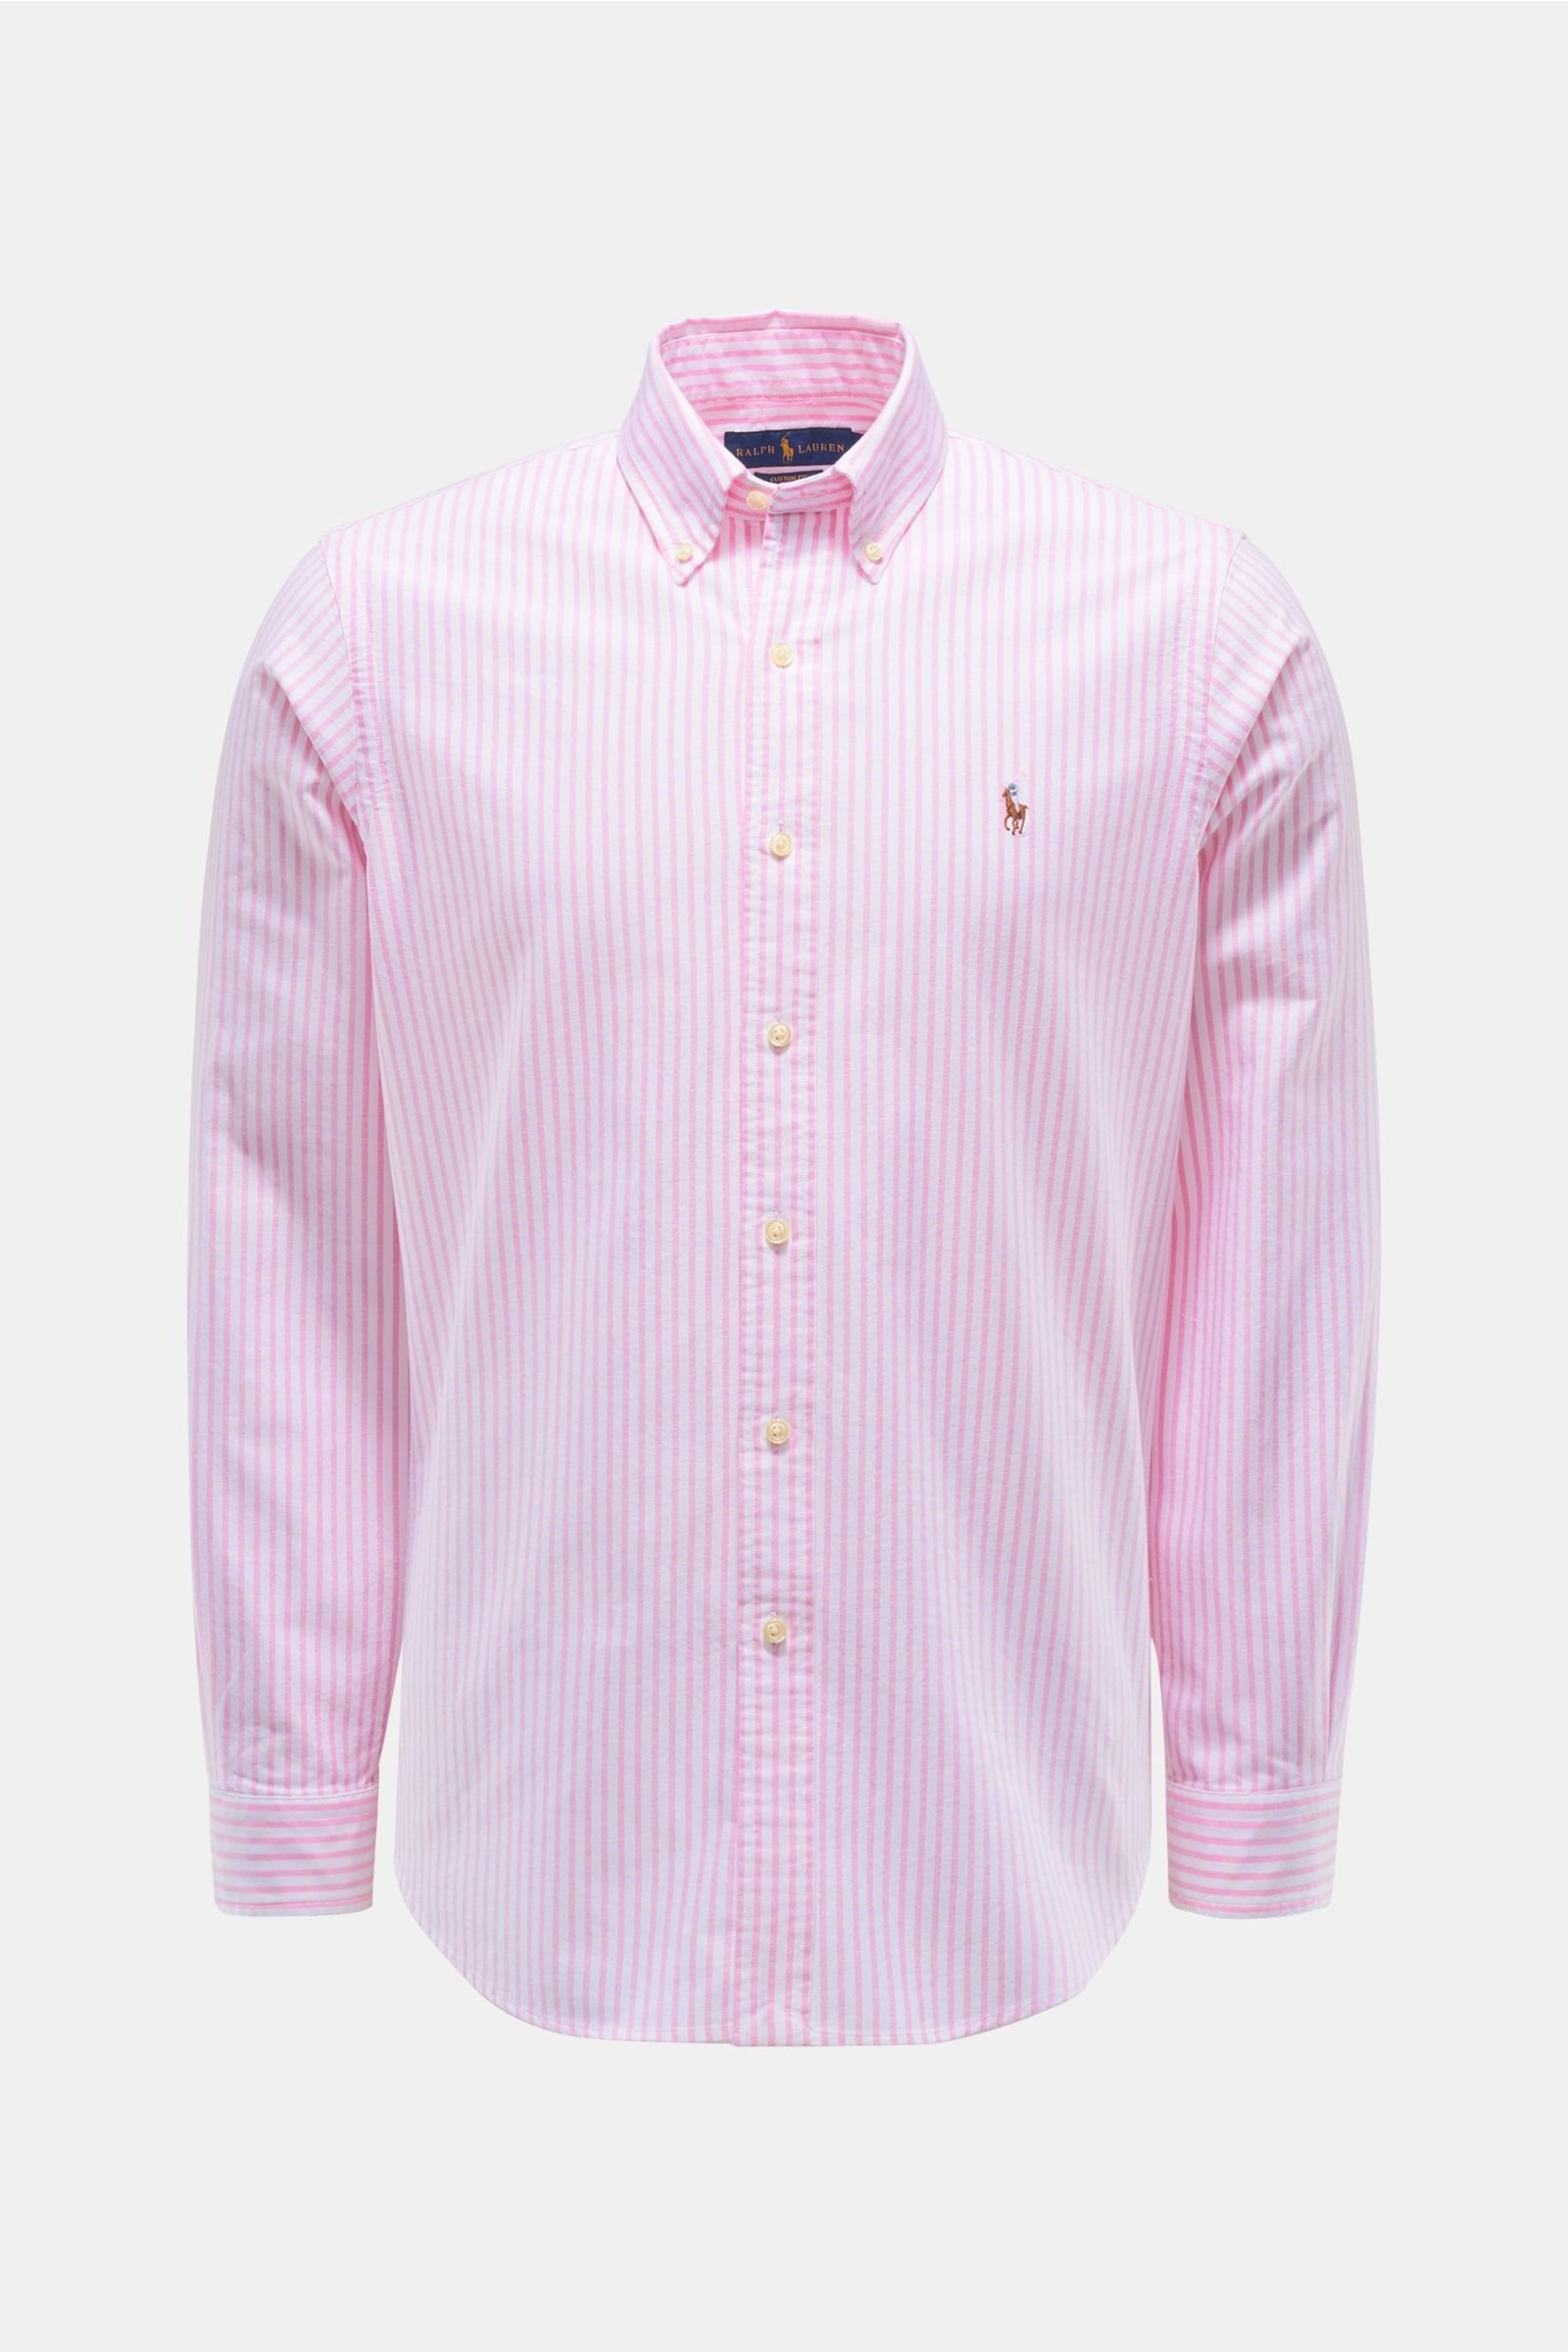 Oxfordhemd Button-Down-Kragen rosé/weiß gestreift